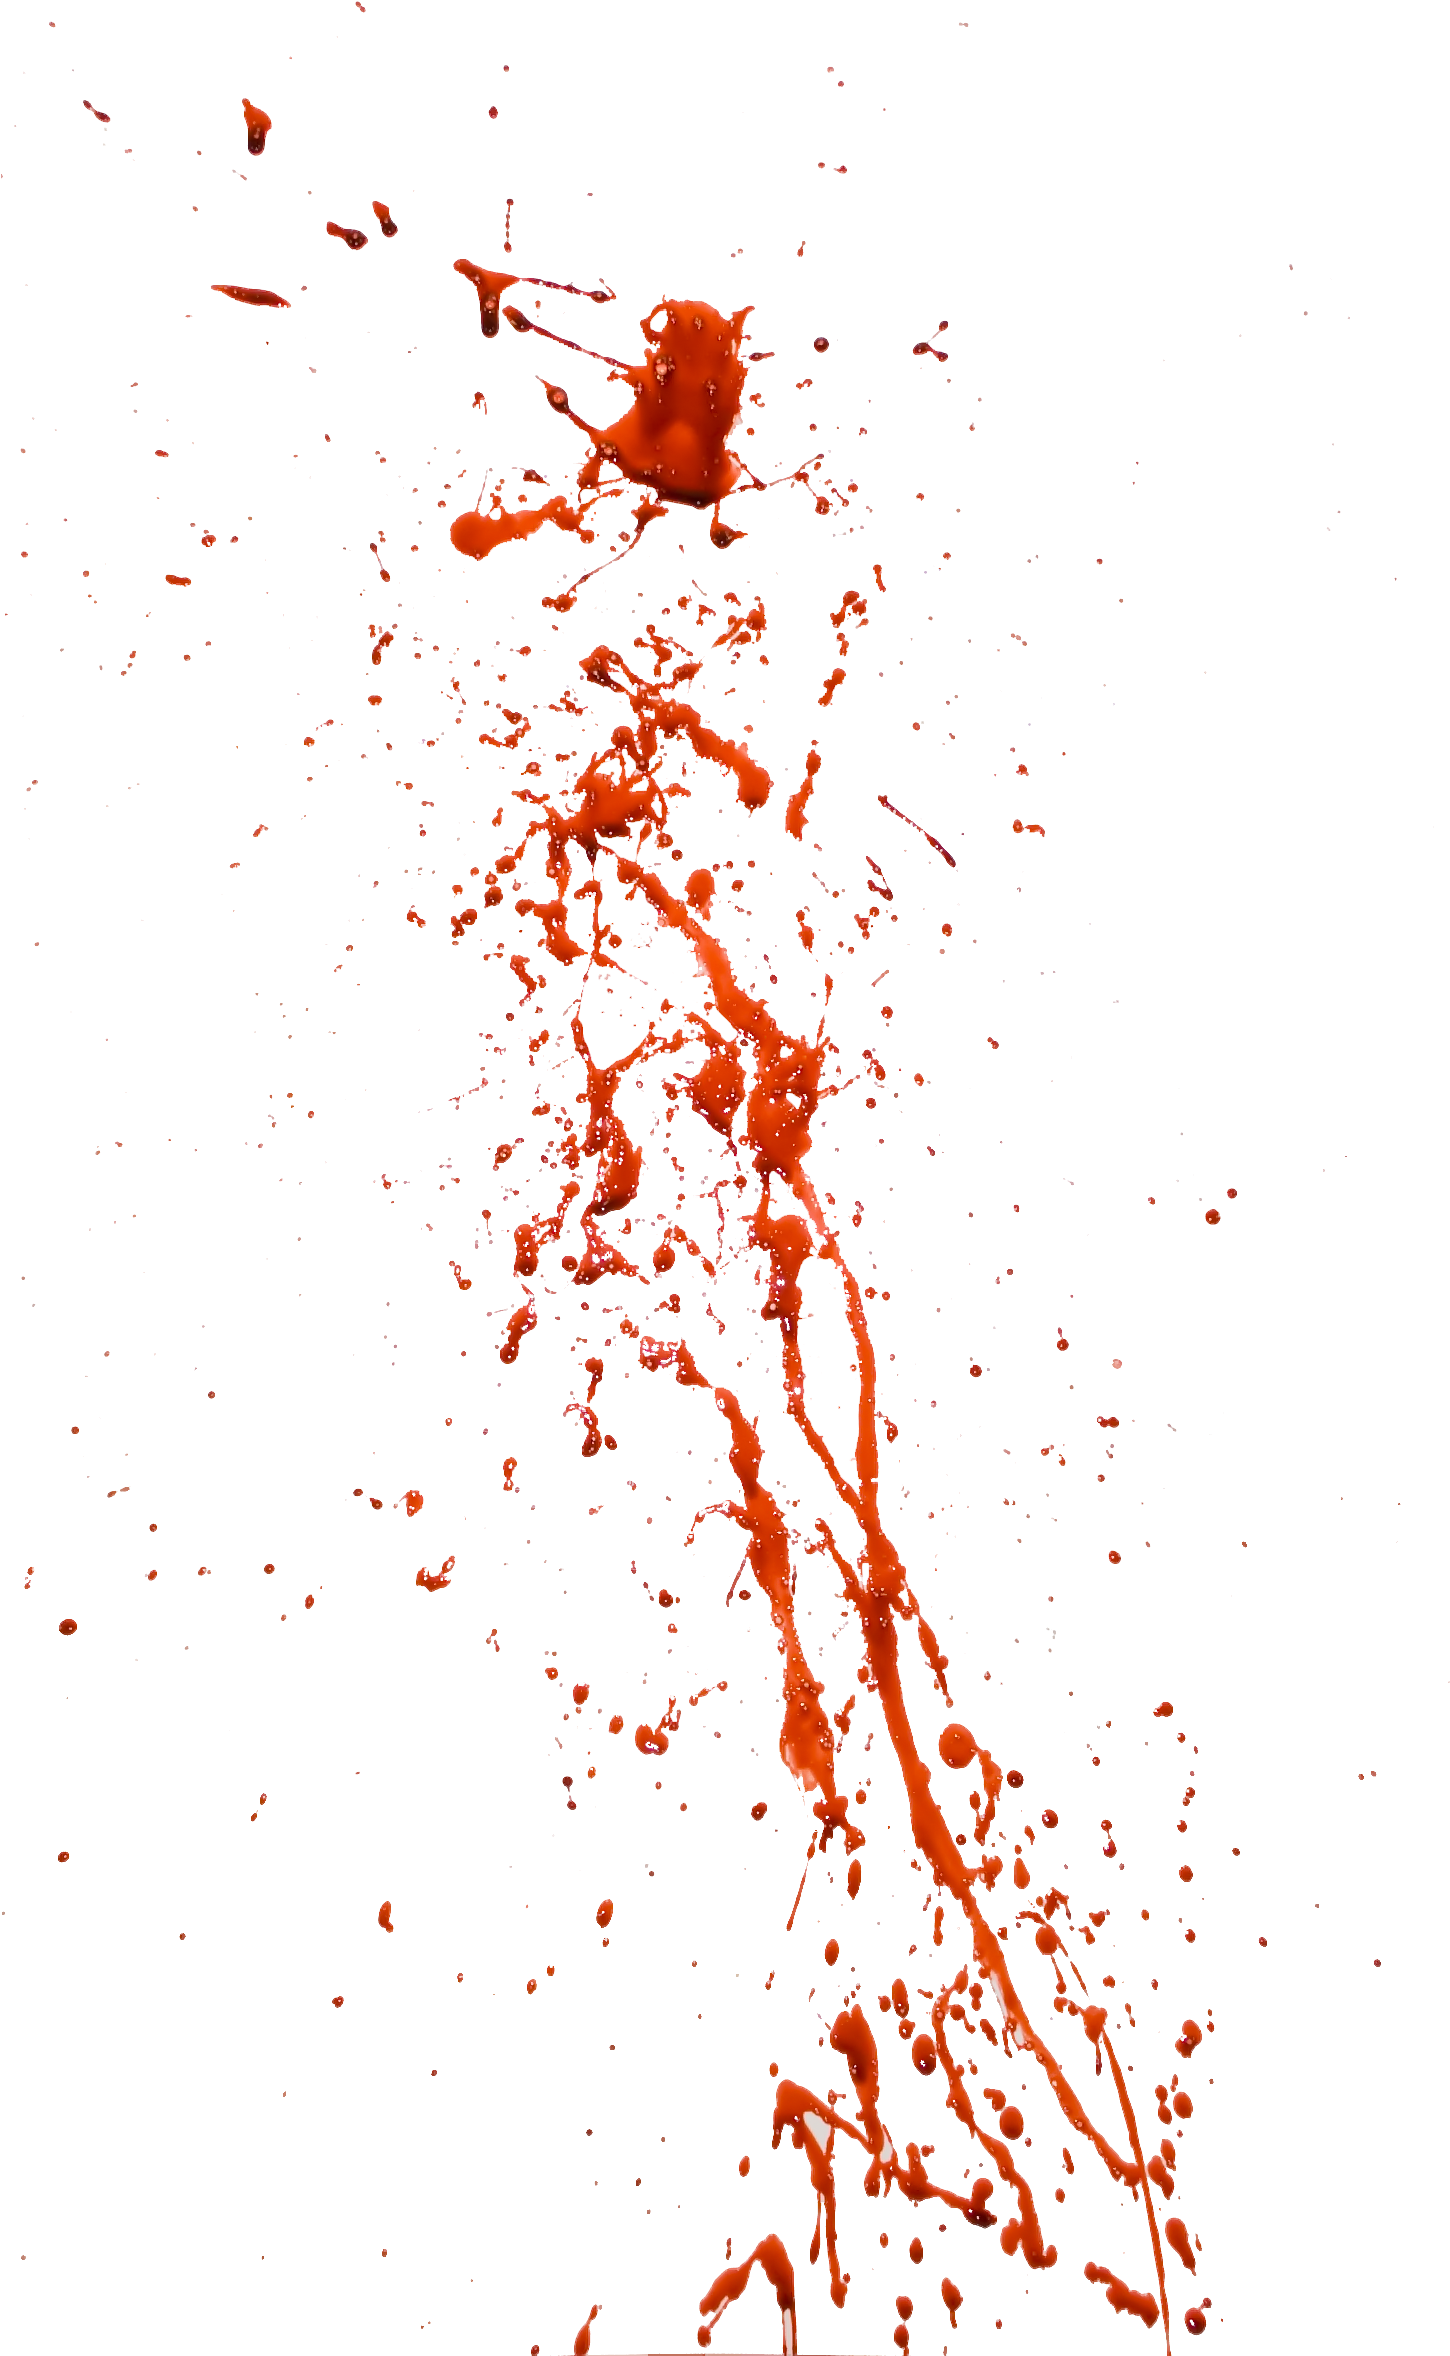 Red Splatter Against Teal Background